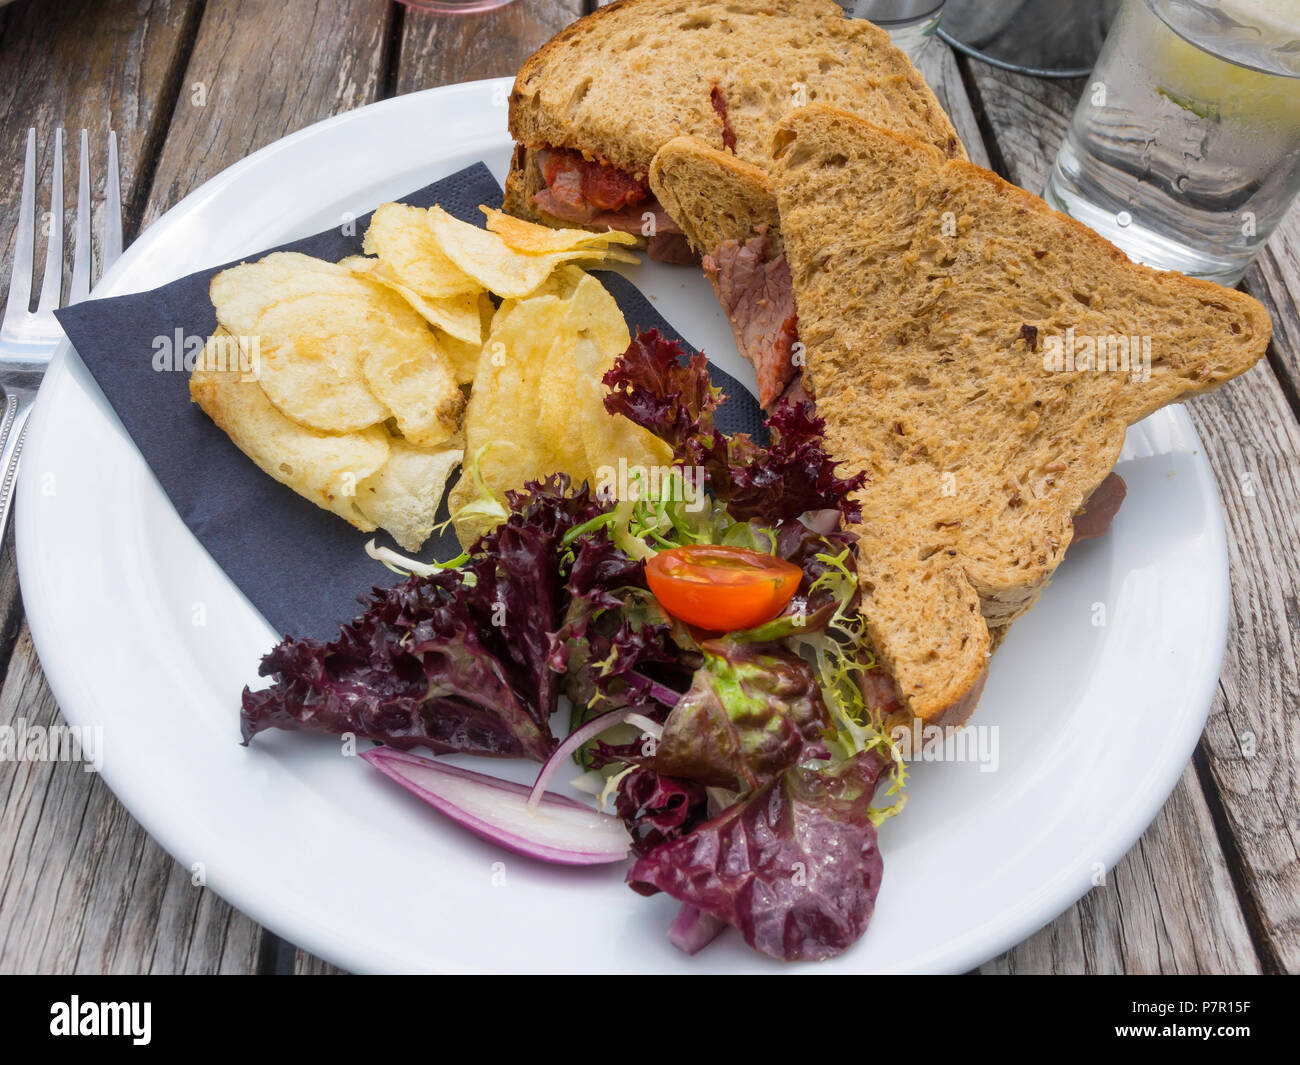 Mittagessen Snack auf einem außerhalb Café Tabelle Roastbeef Sandwich auf braunem Brot mit Salat und Kartoffelchips Stockfoto